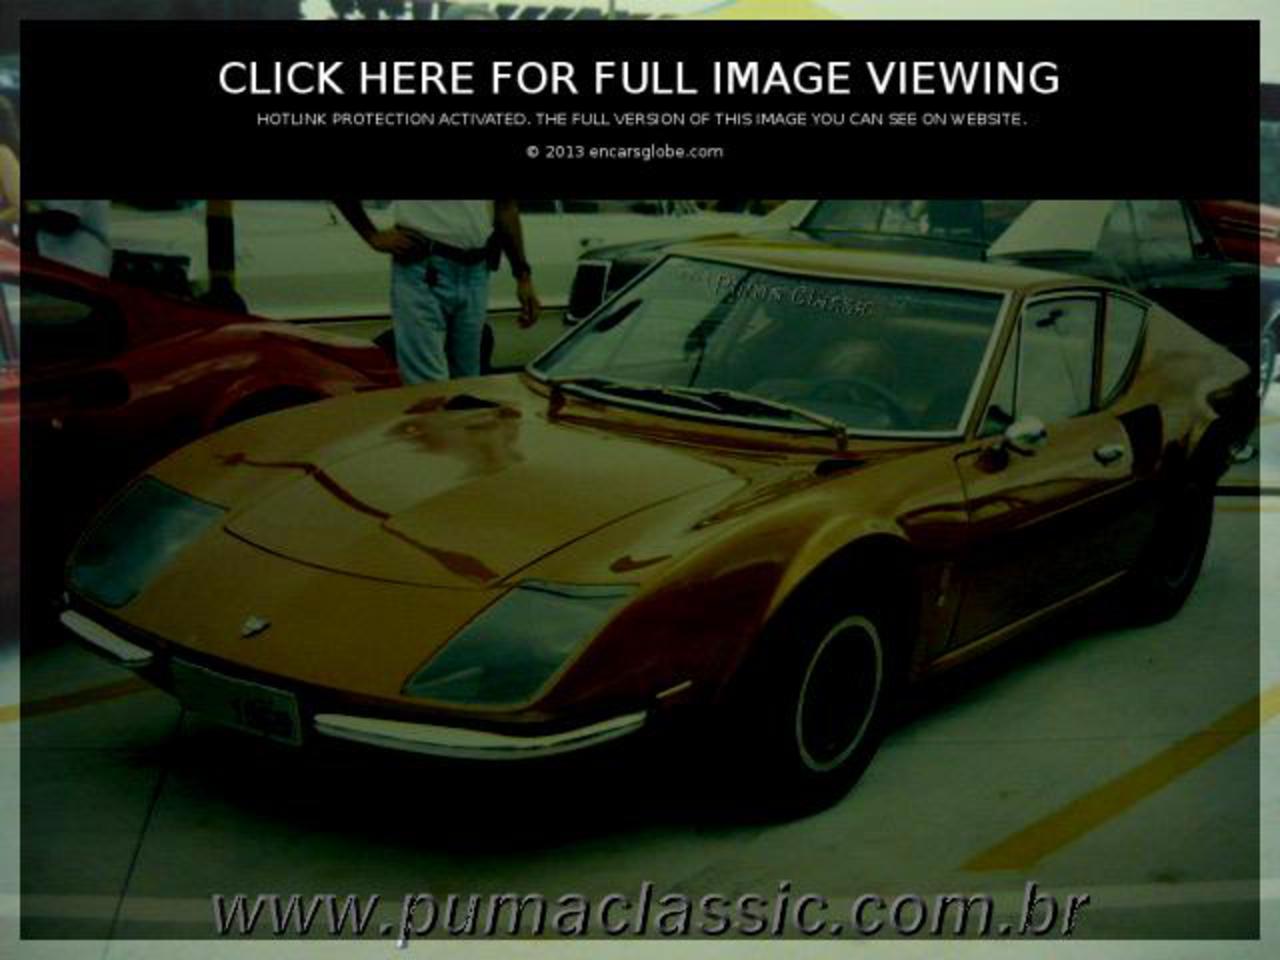 PUMA GT 4R: Galerie de photos, informations complètes sur le modèle...